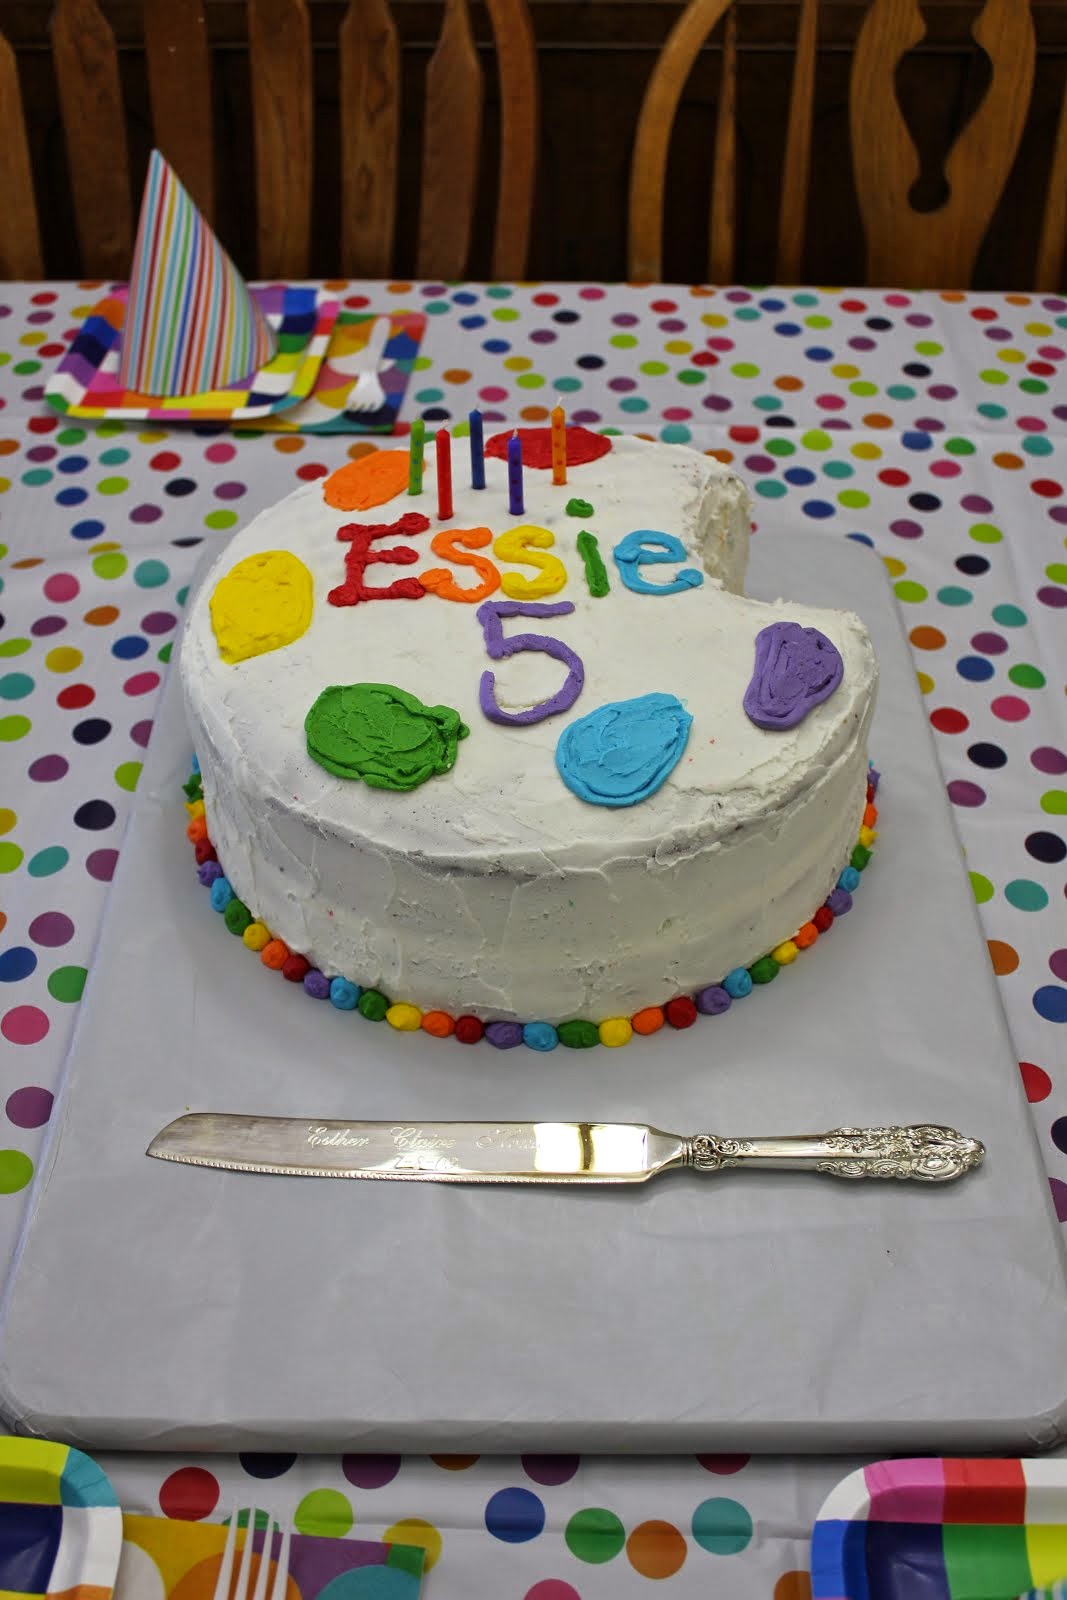 Essie's 5th Birthday Party (Saige/Art)